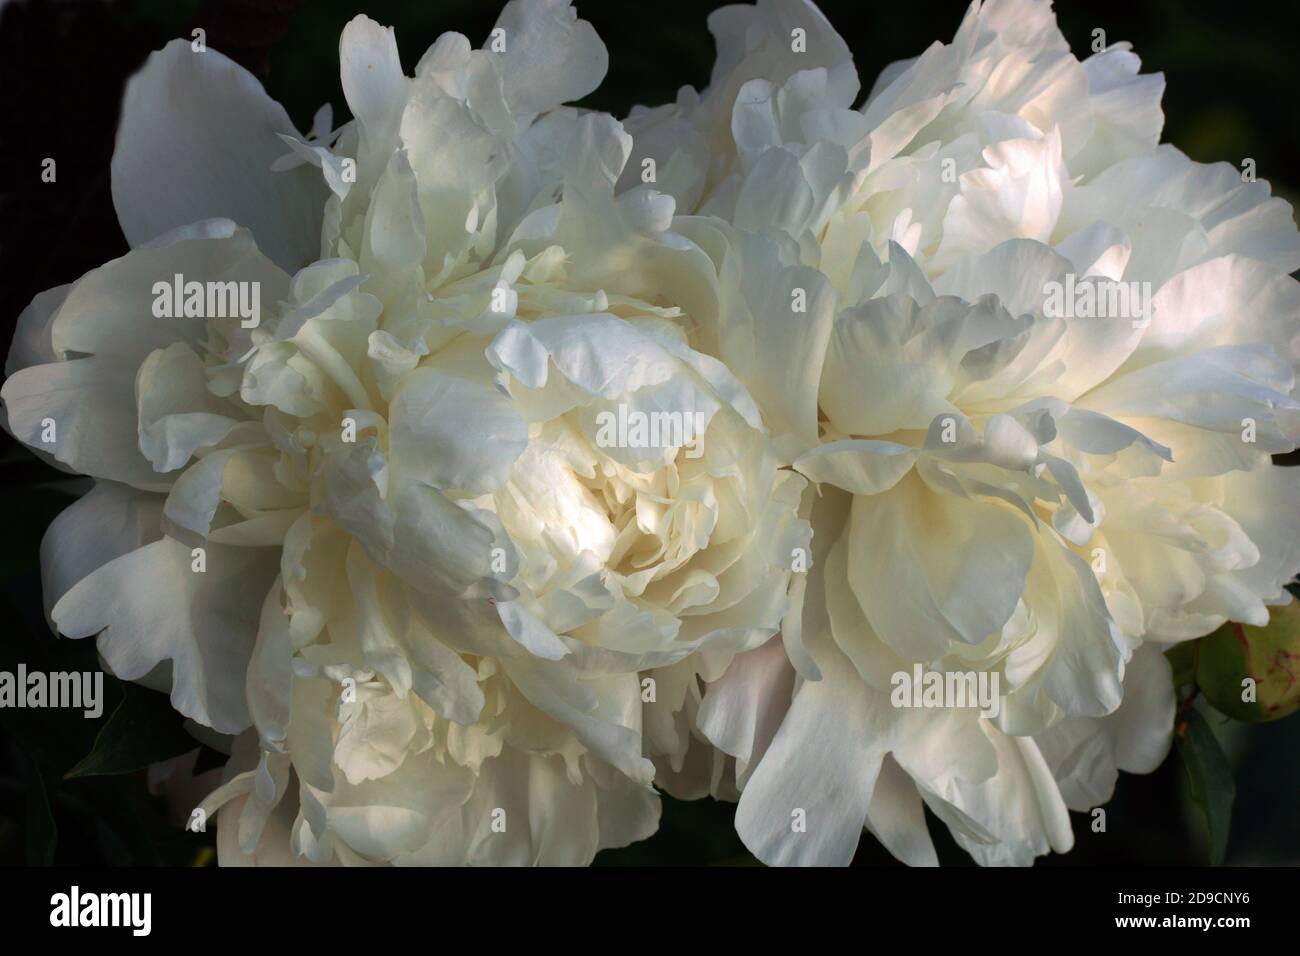 Pfingstrose Corinne Wersan. Doppelte weiße Pfingstrose. Paeonia lactiflora (Chinesische Pfingstrose oder gemeinsamen Garten päonie). Stockfoto